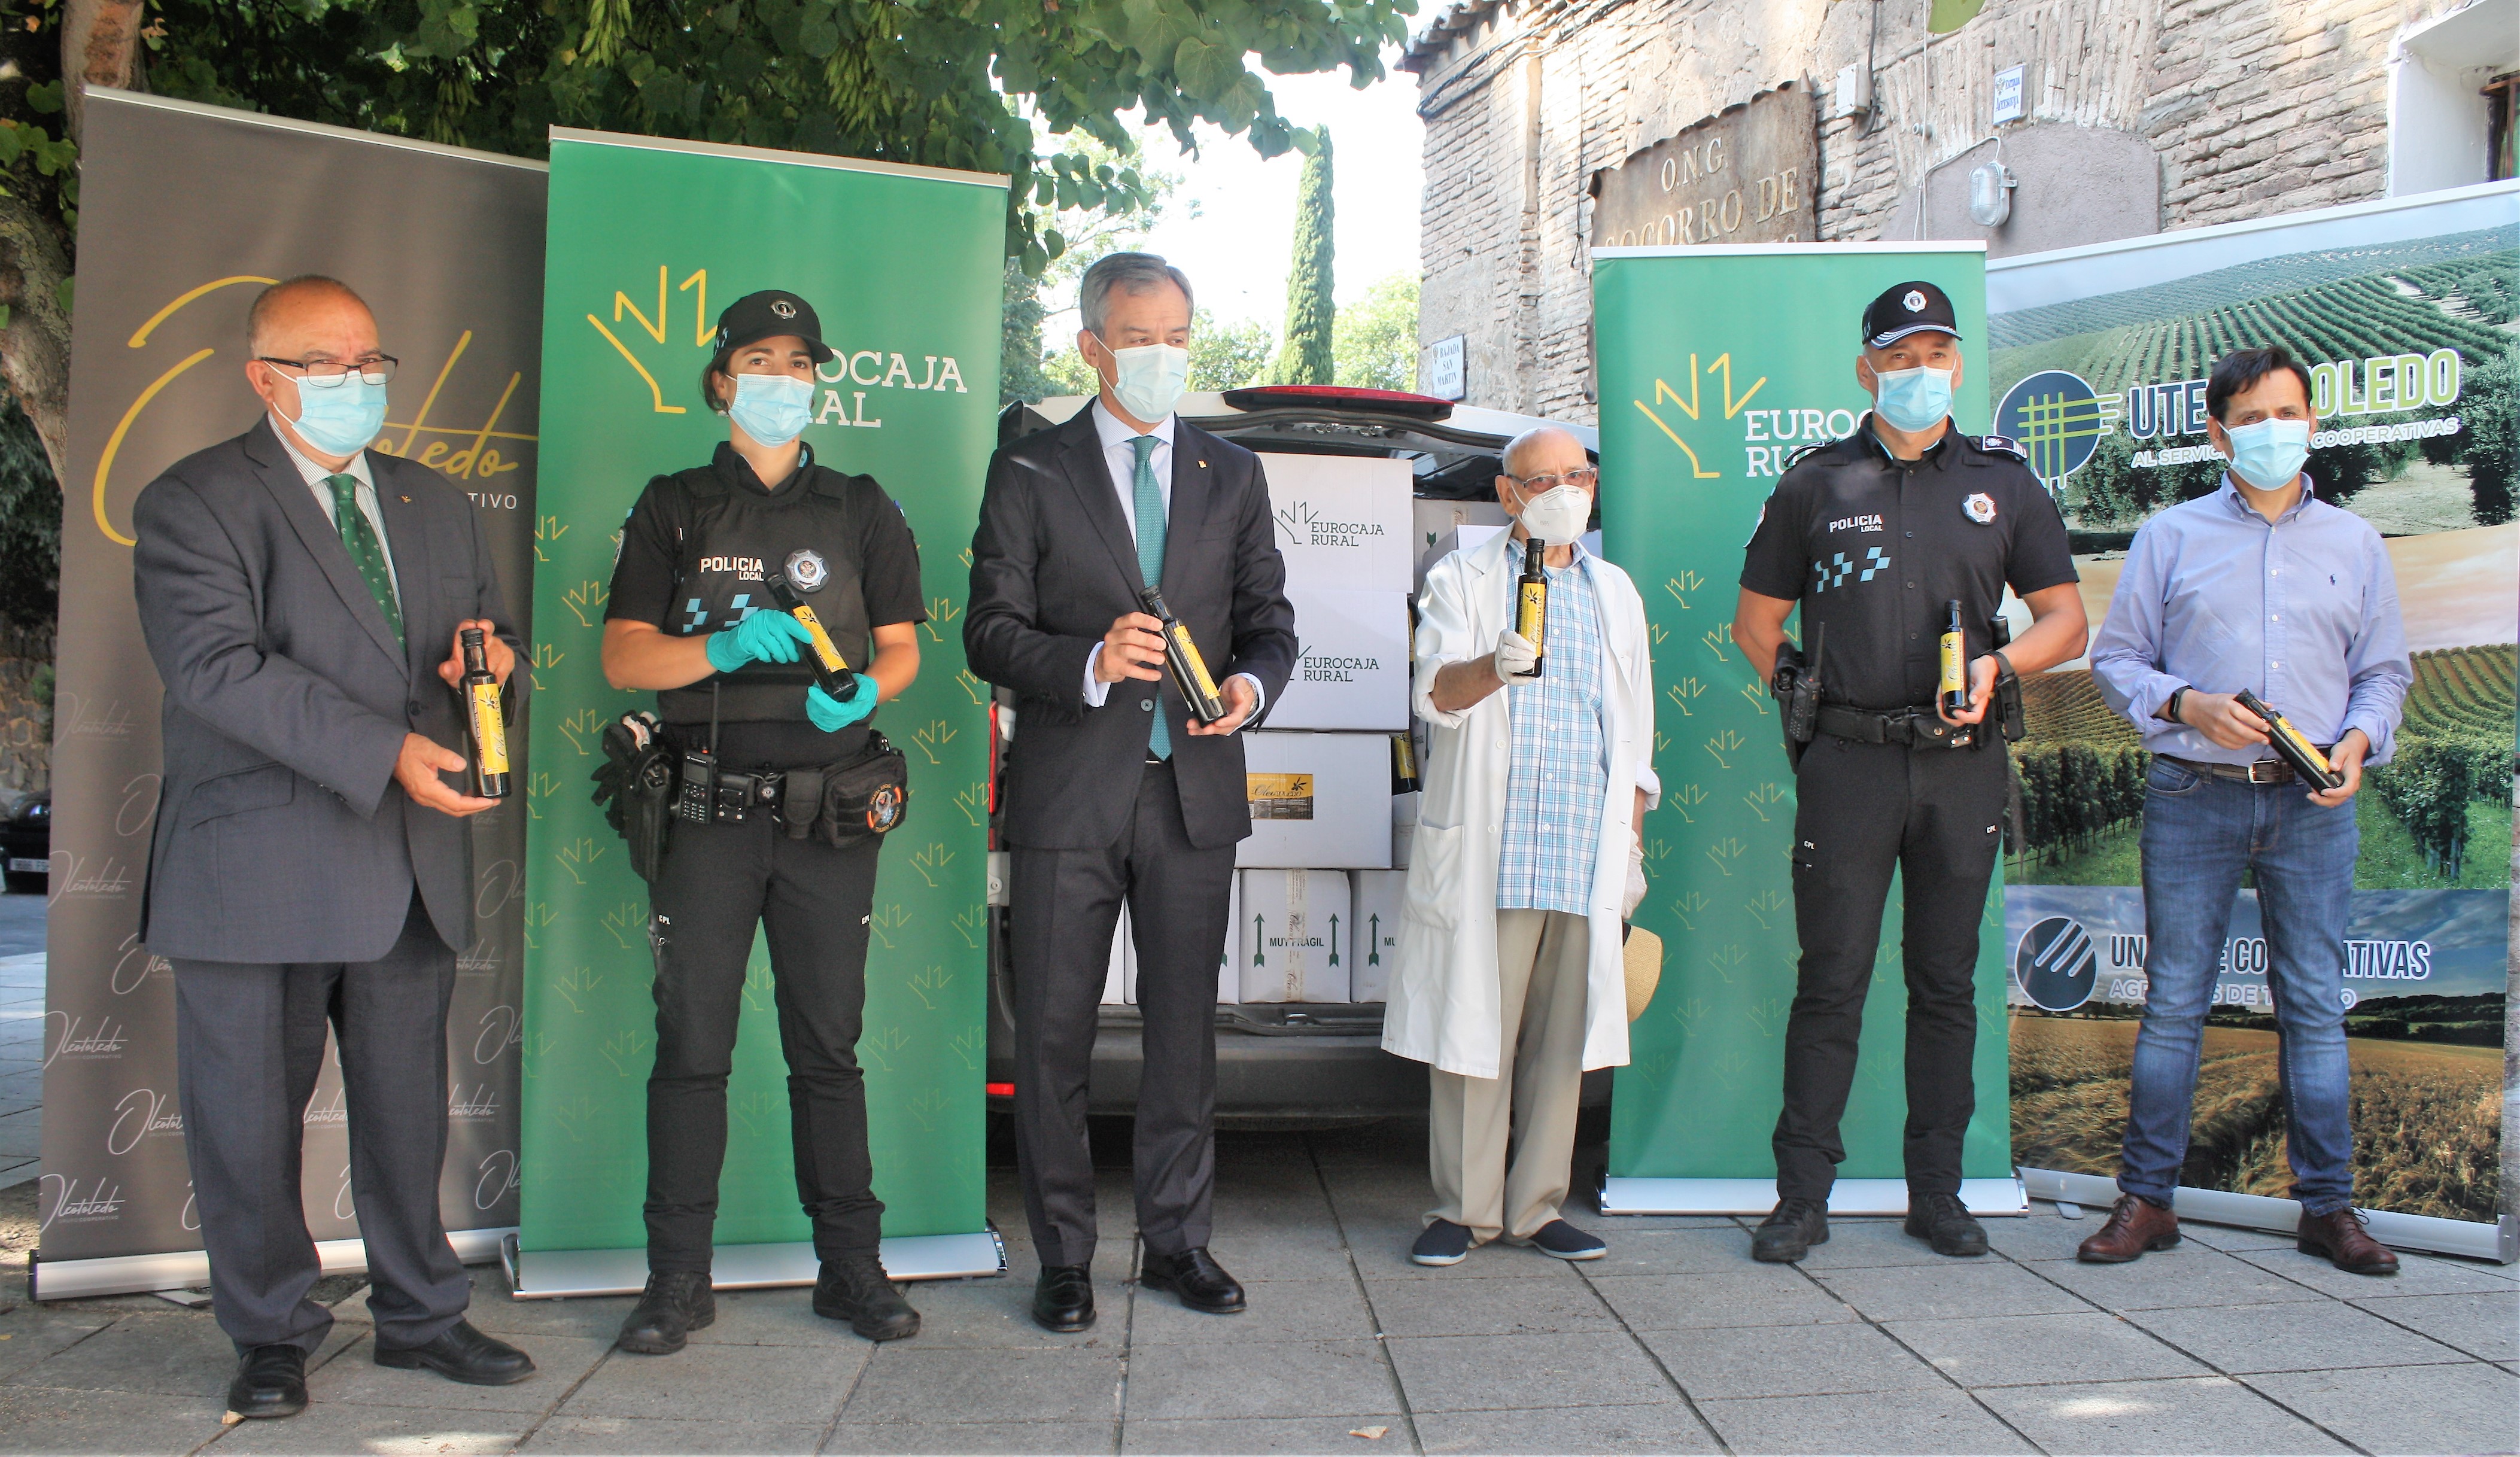 Javier López, presidente de Eurocaja Rural, ha entregado una tonelada de alimentos a Cipriano, "el amigo de los pobres de Toledo".